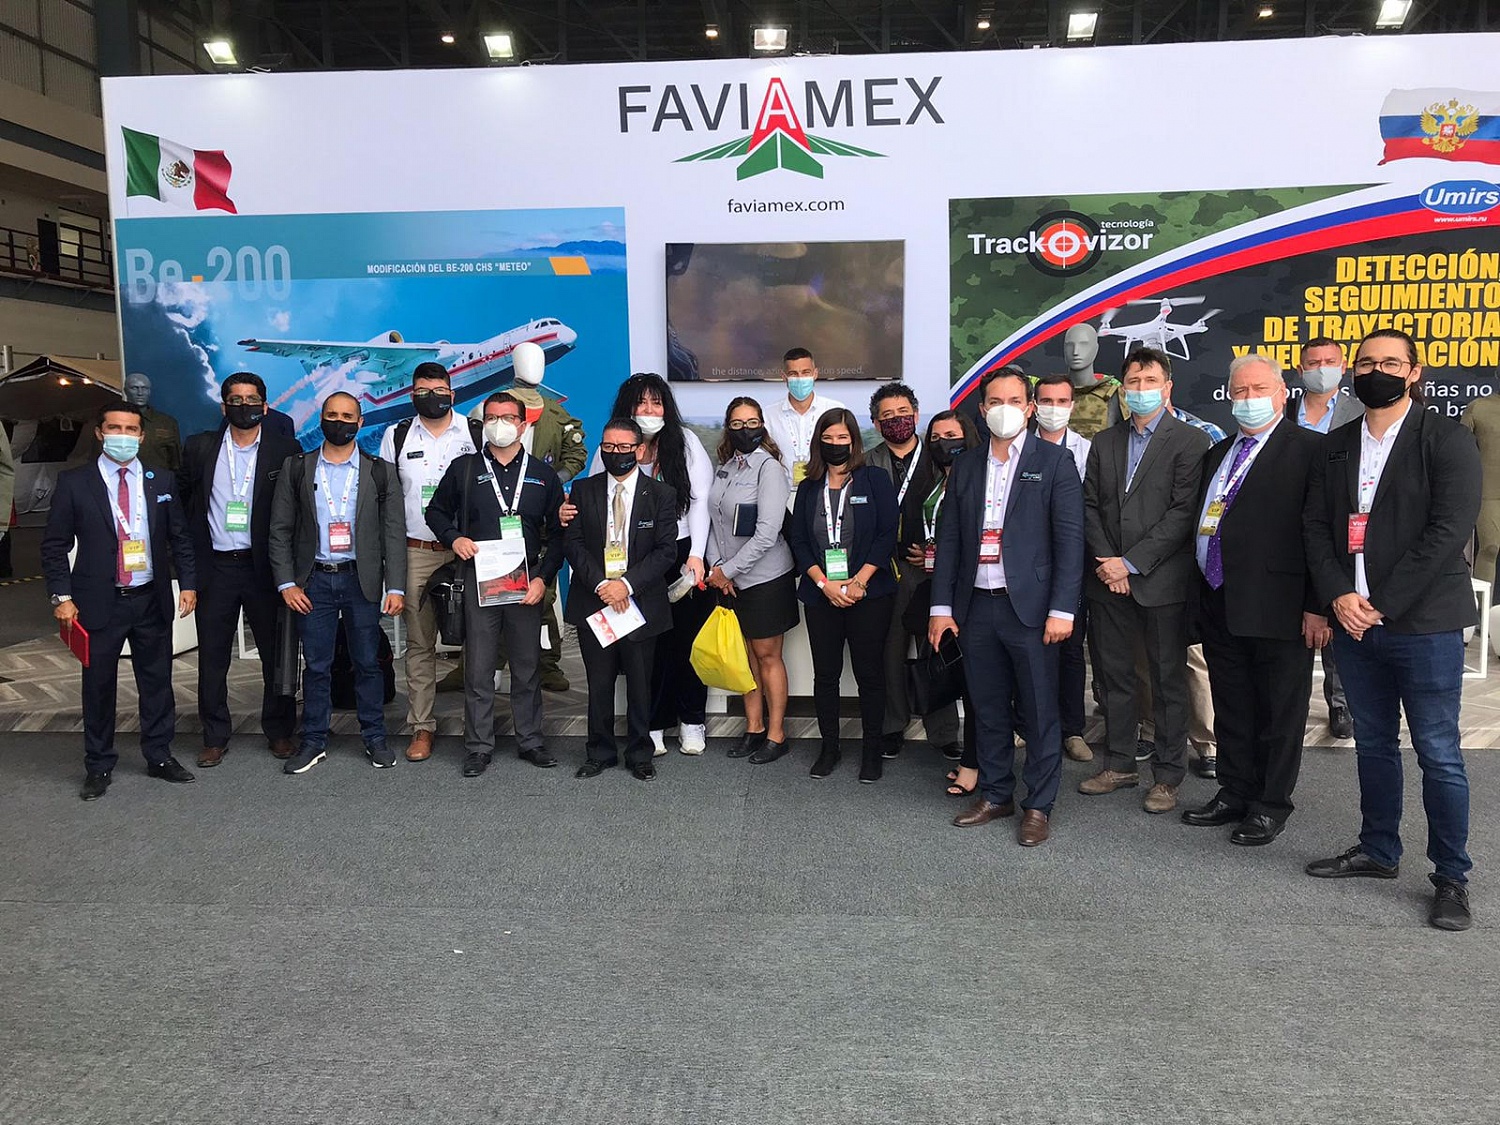 Visit Zelinsky Group at FAMEX 2021 (Mexico)